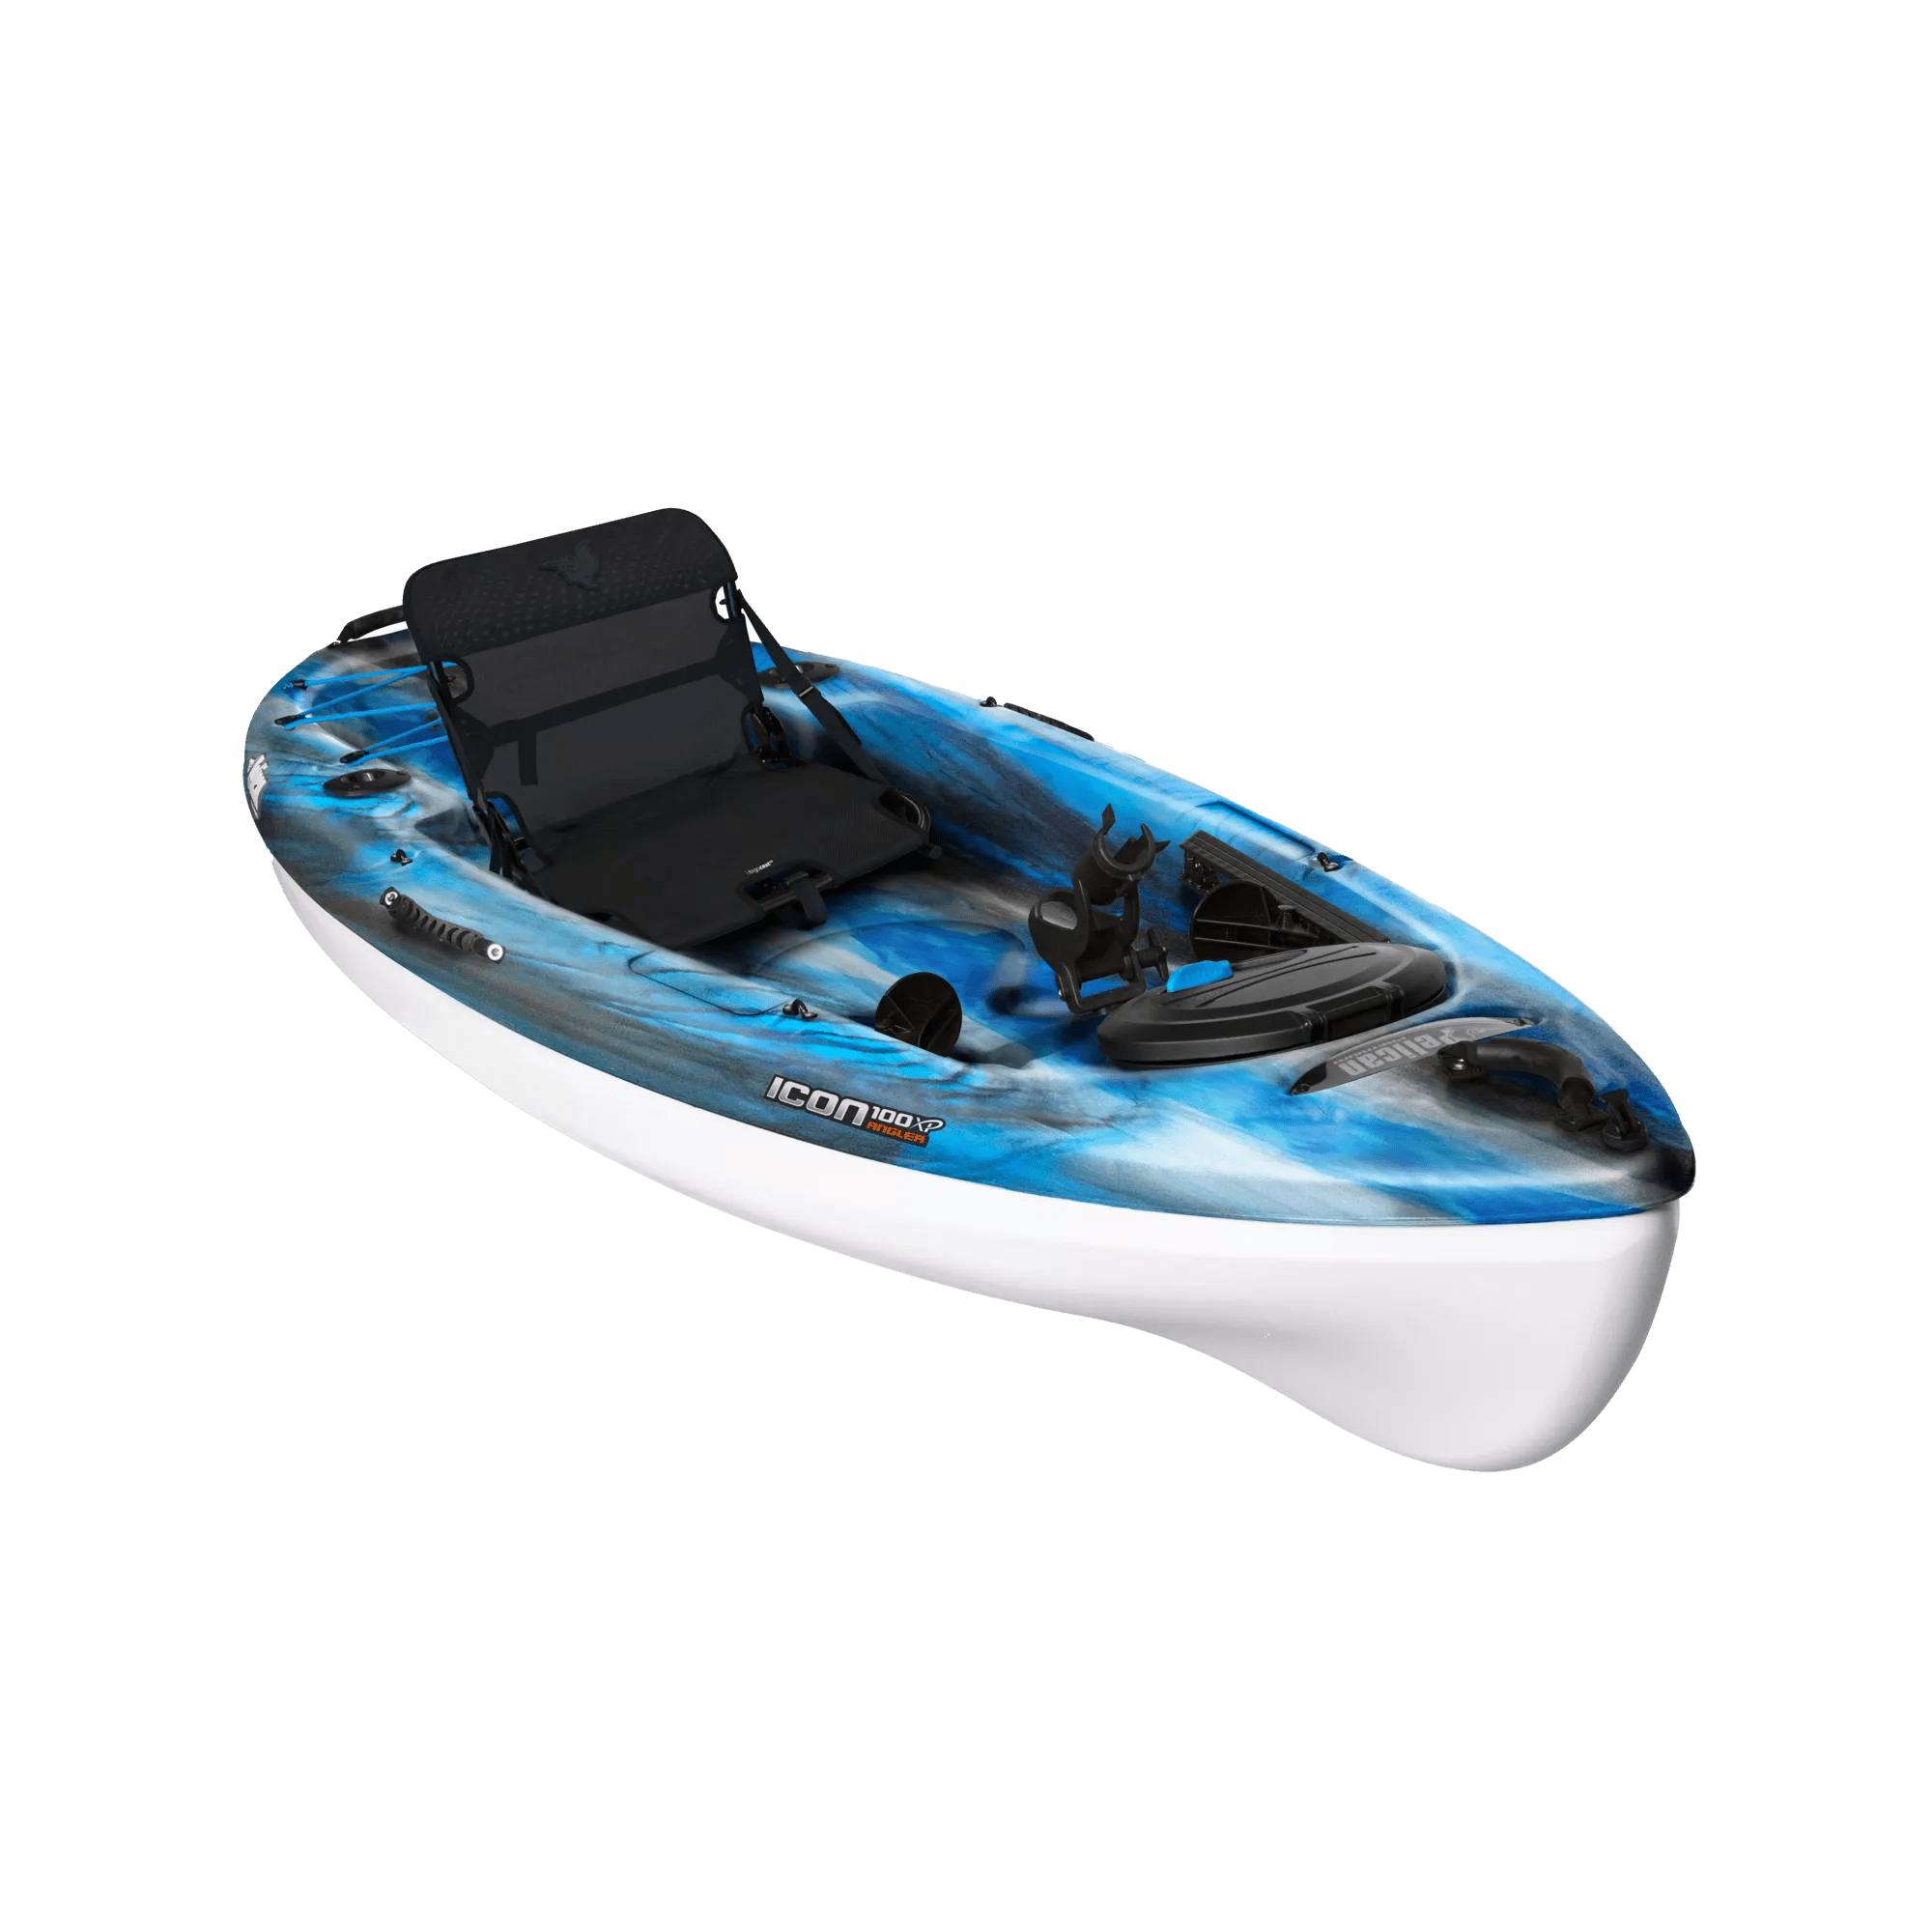 PELICAN - Kayak Icon 100XP Angler Fishing Kayak -  - KBP10P309 - ISO 